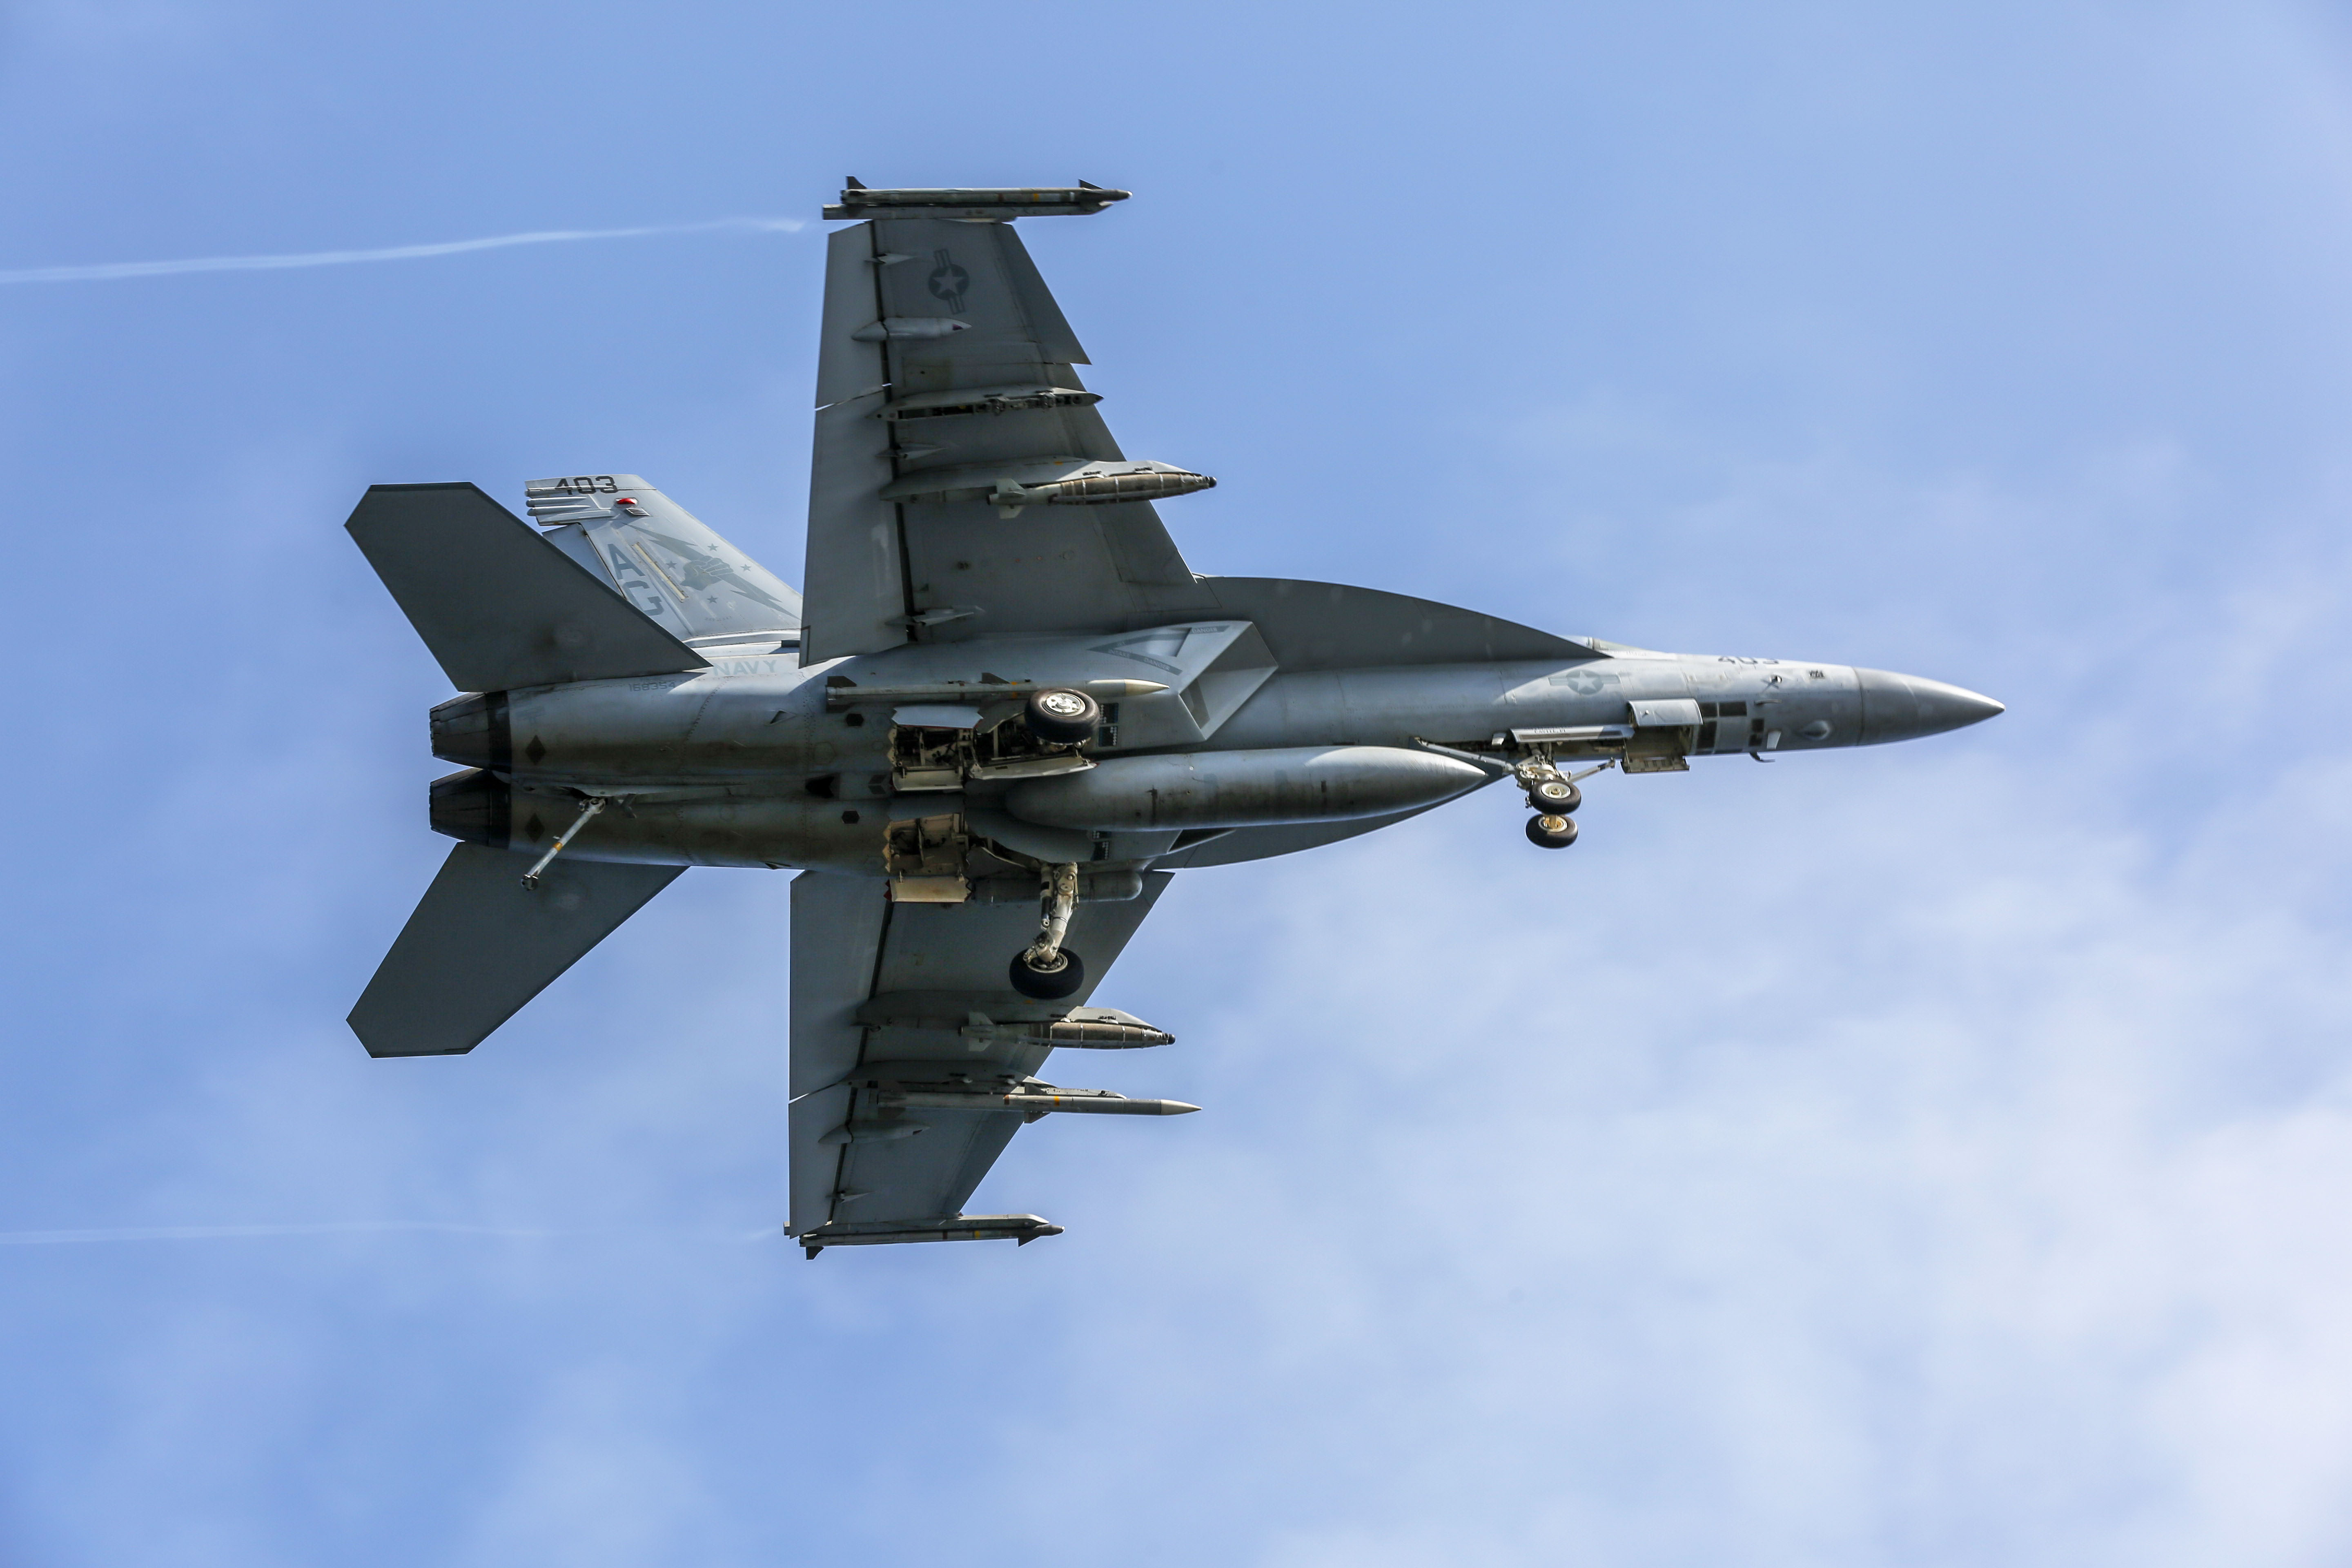 A Super Hornet: nagyobb, erősebb, több fegyvert és kerozint hordozhat